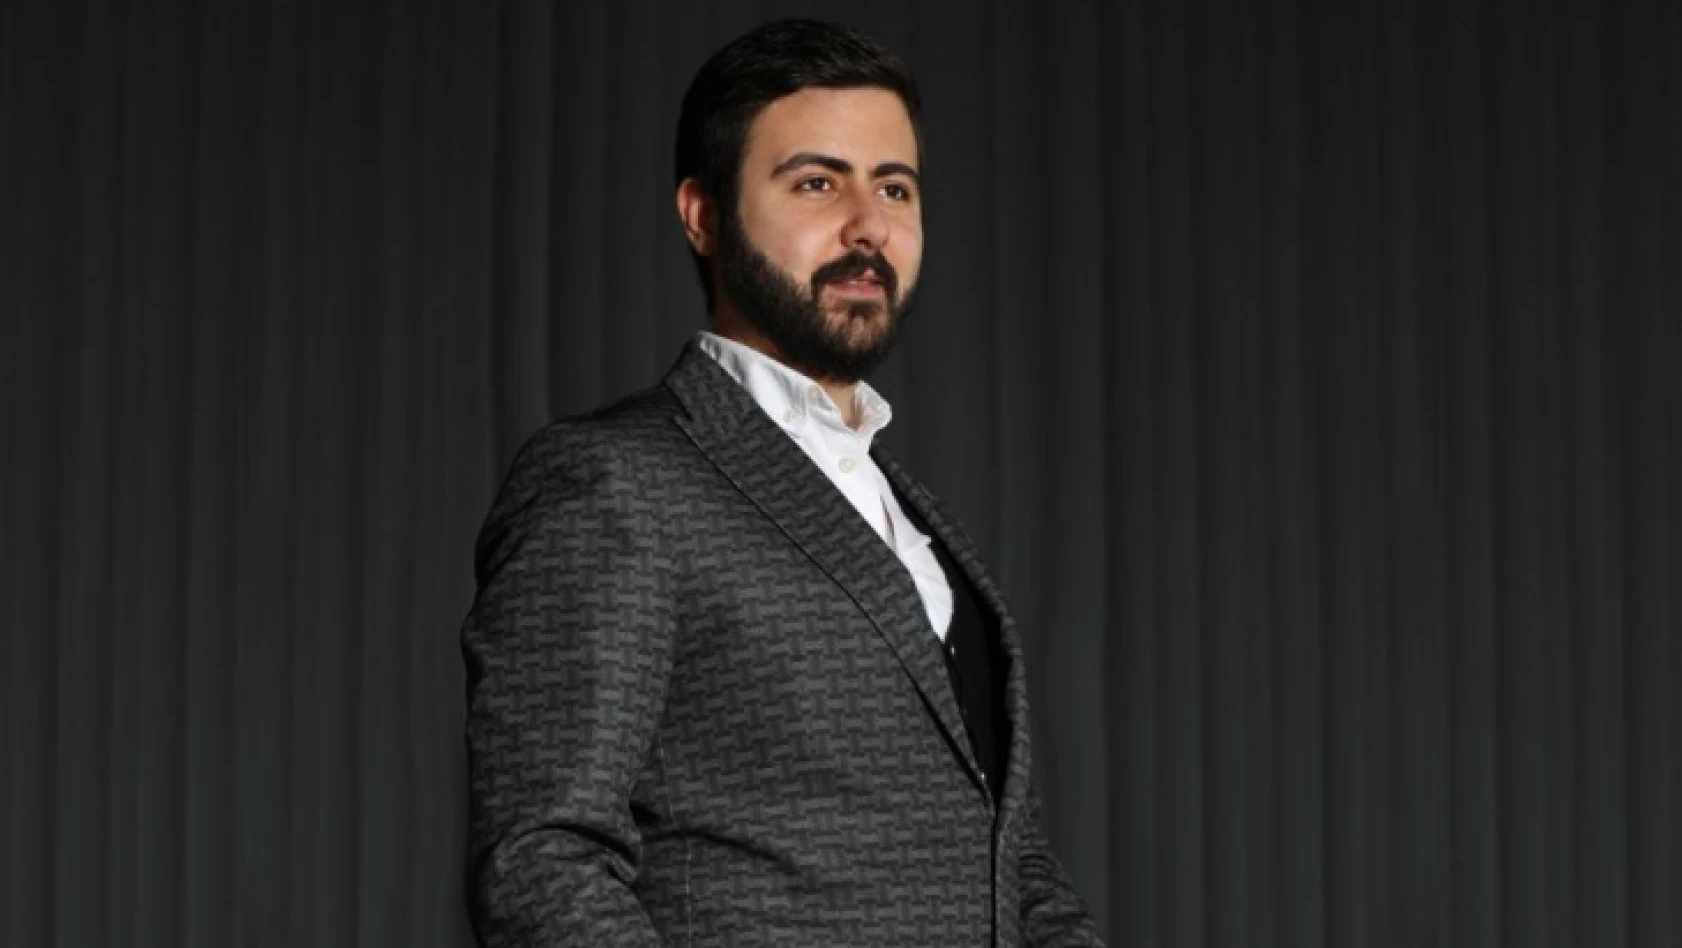 Genç girişimci Ardoğan'dan çevre dostu üretim önerisi